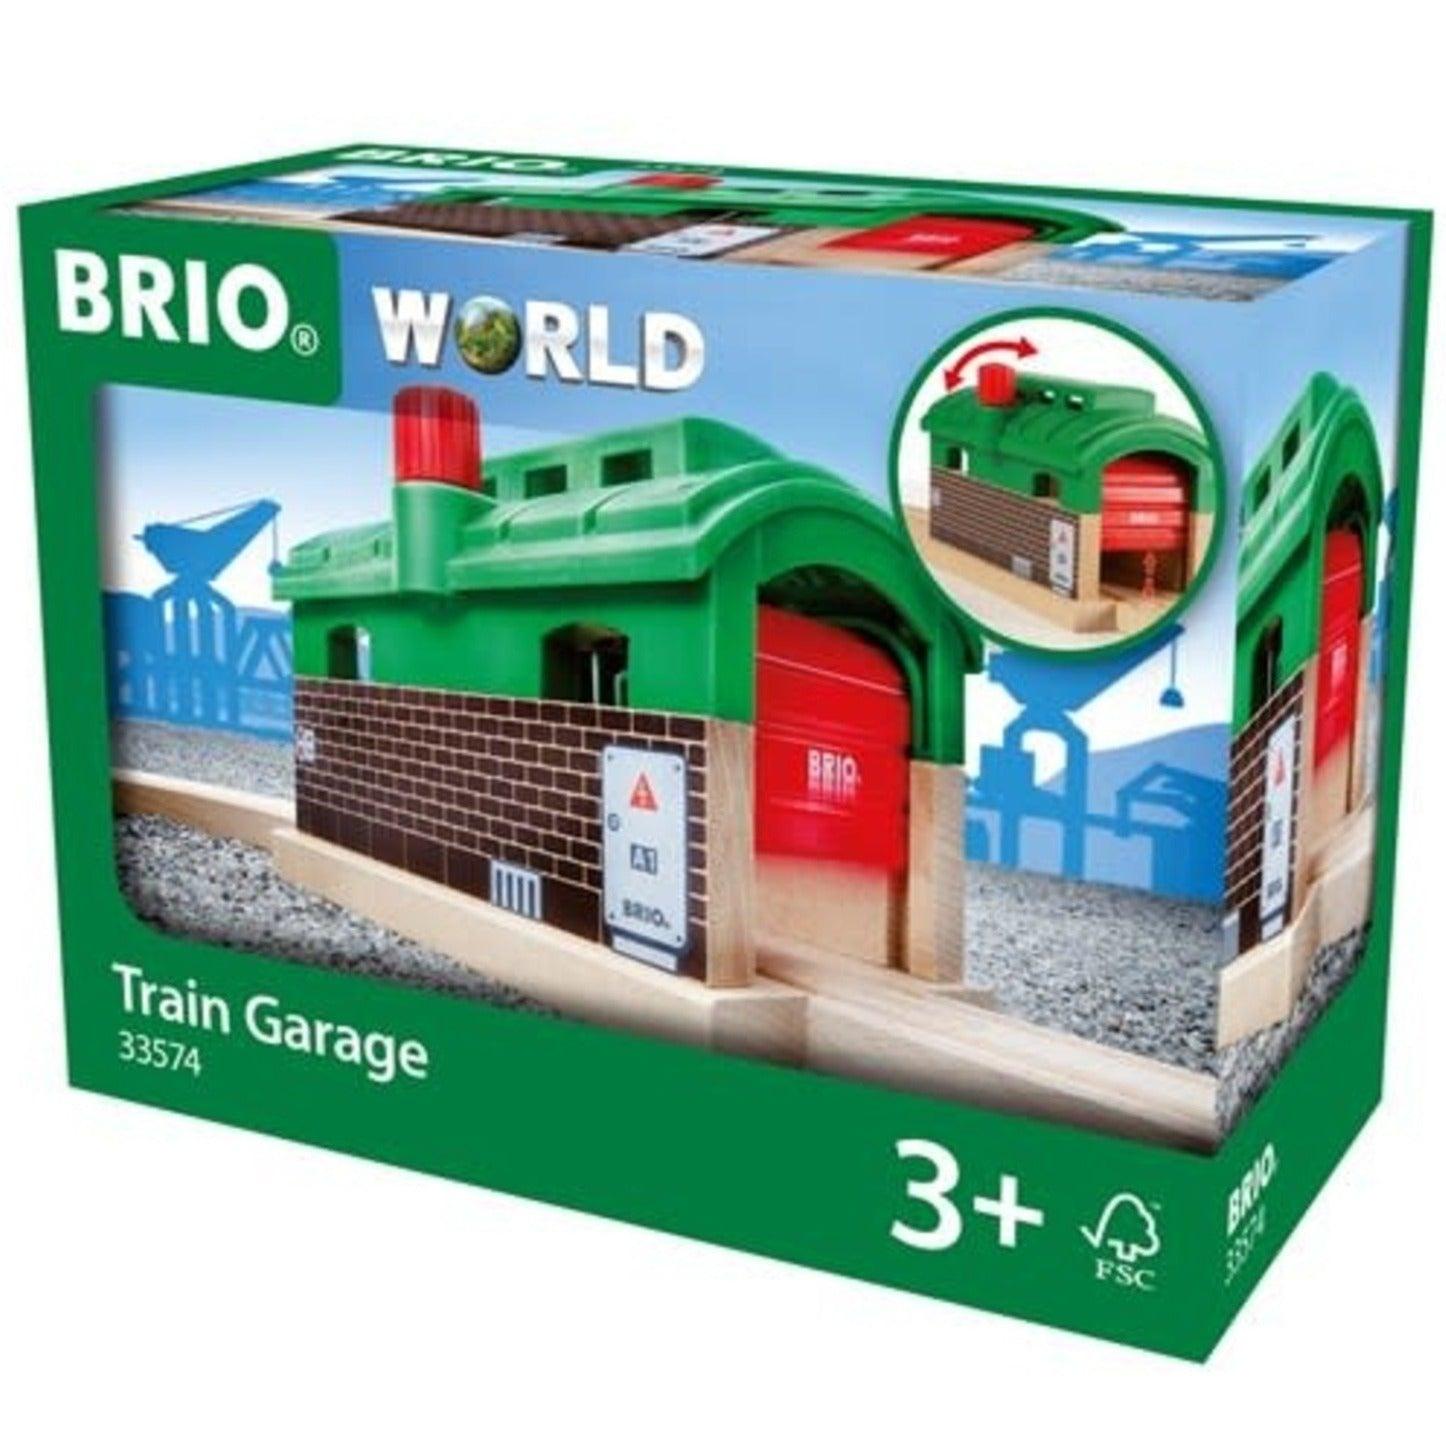 BRIO: garaż dla lokomotywy Parowozownia World - Noski Noski